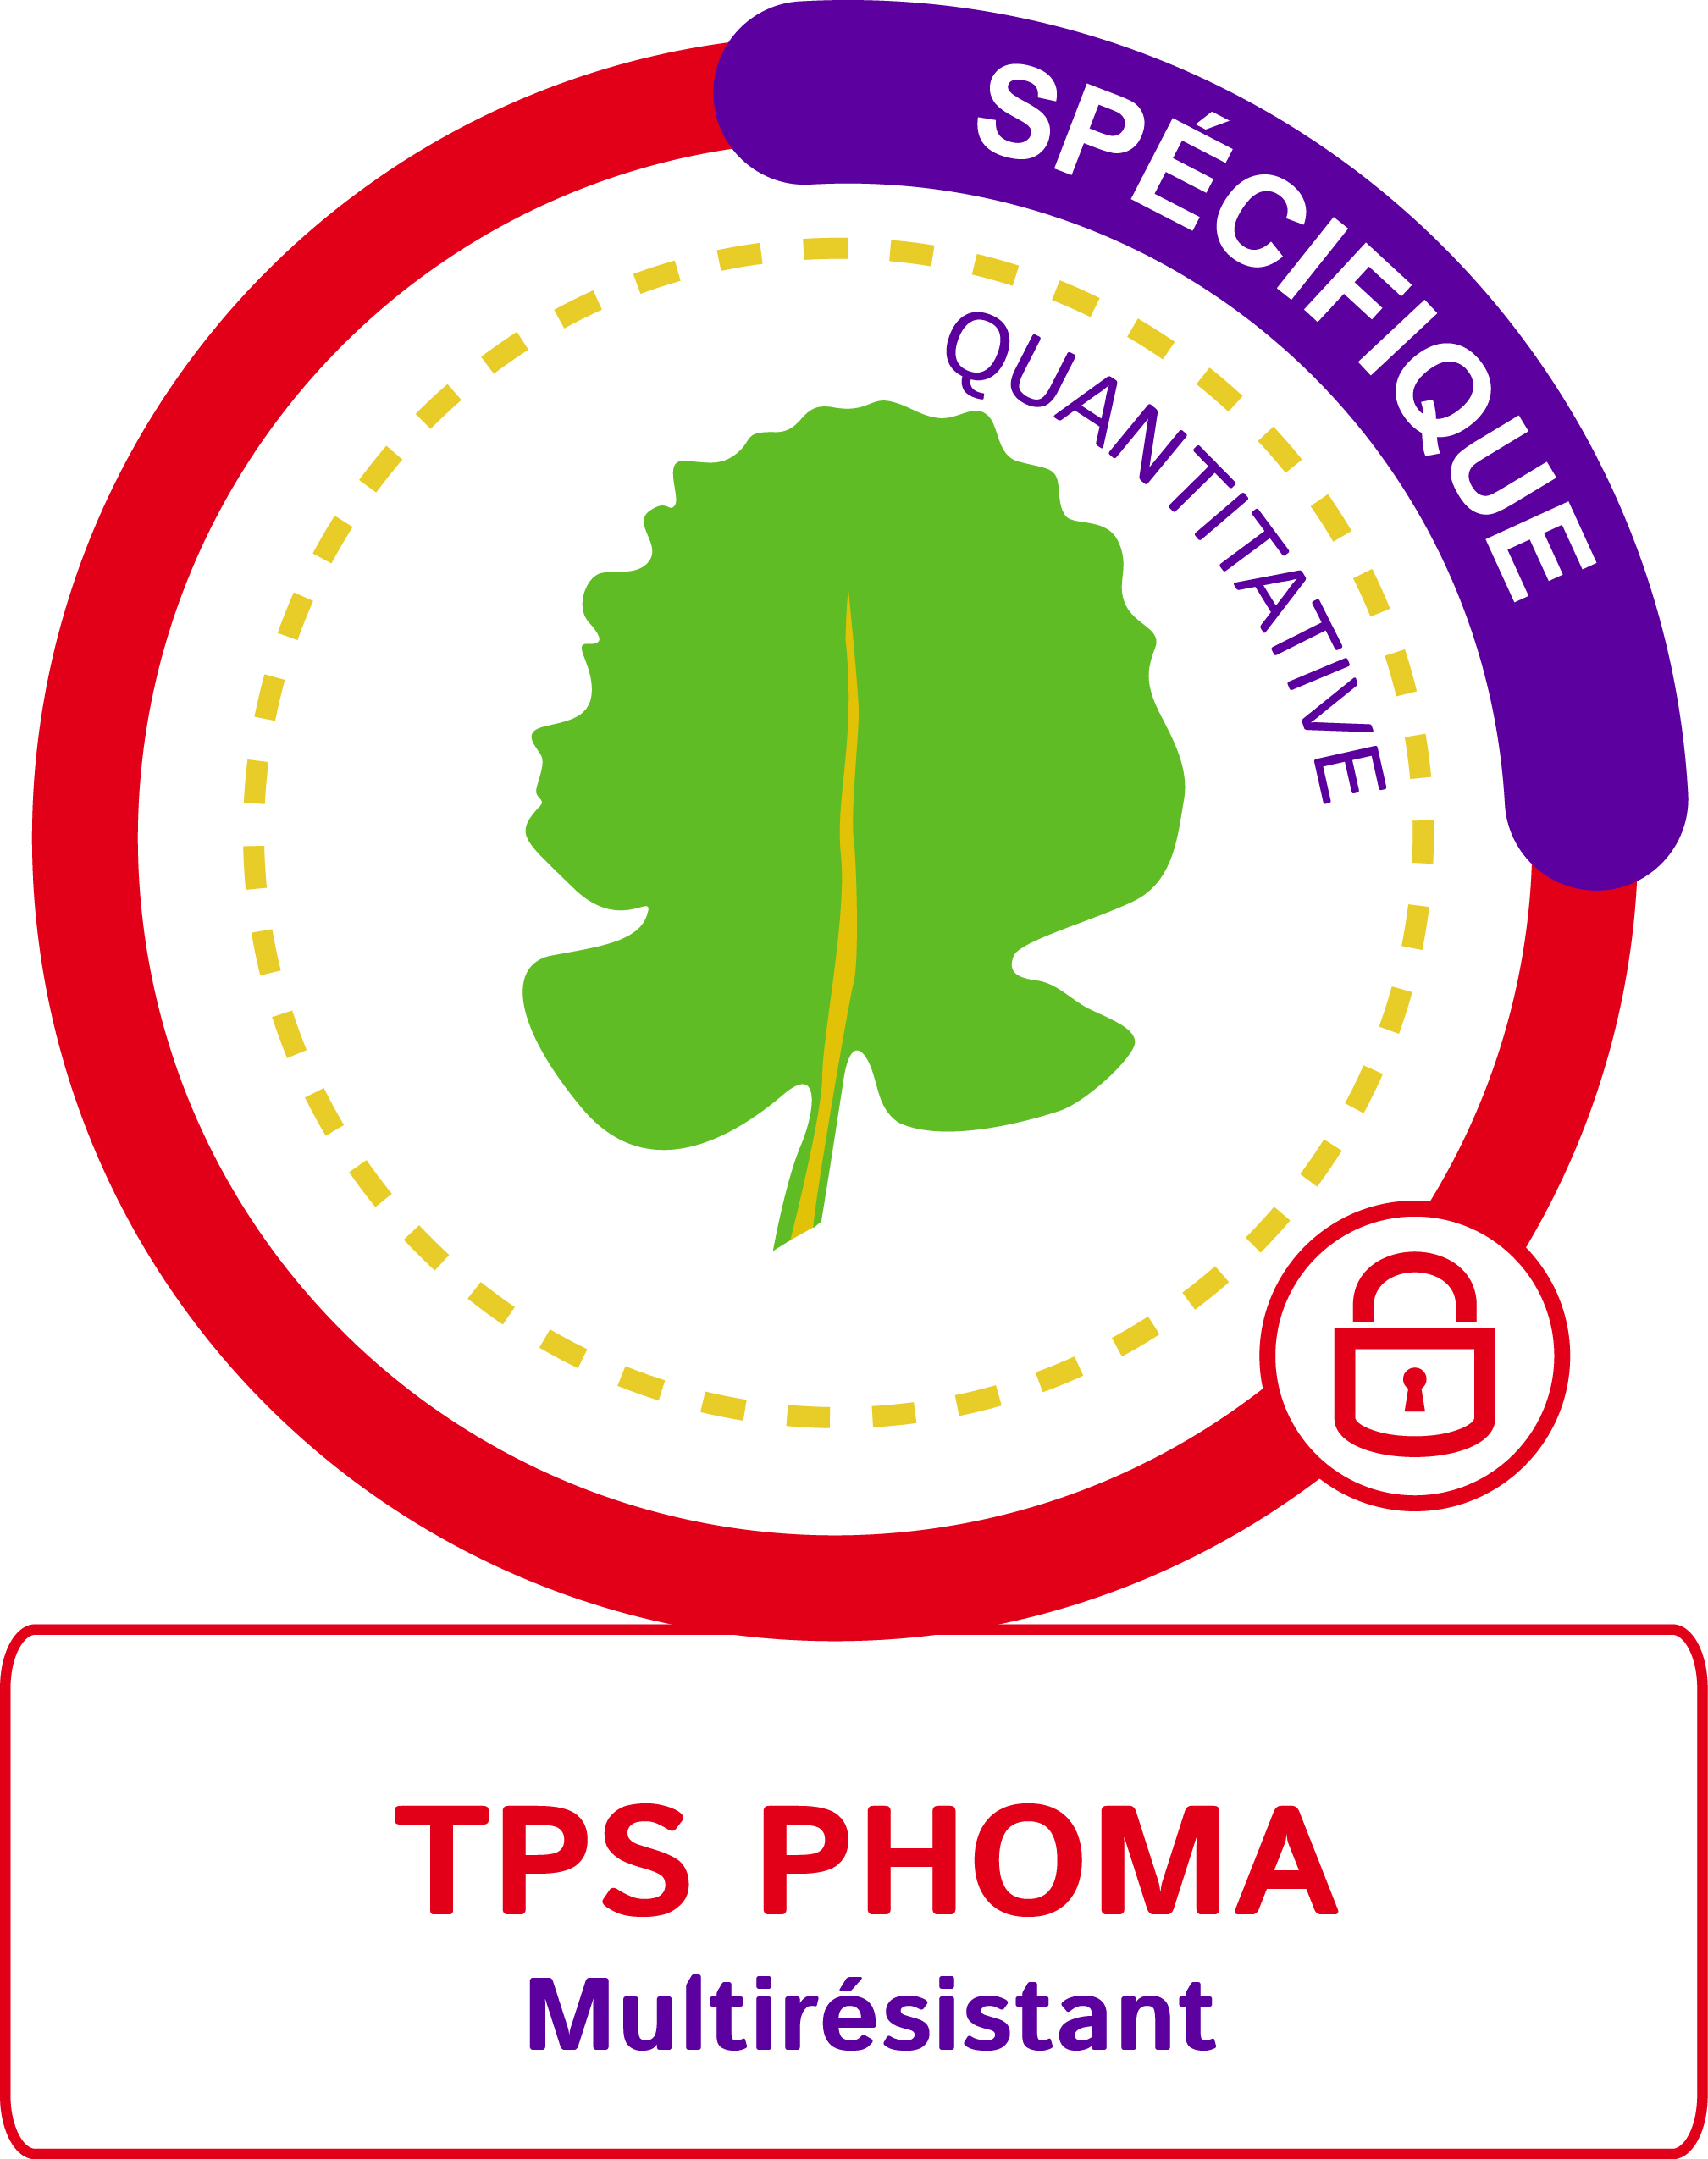 Visuel TPS phoma multirésistant spécifique